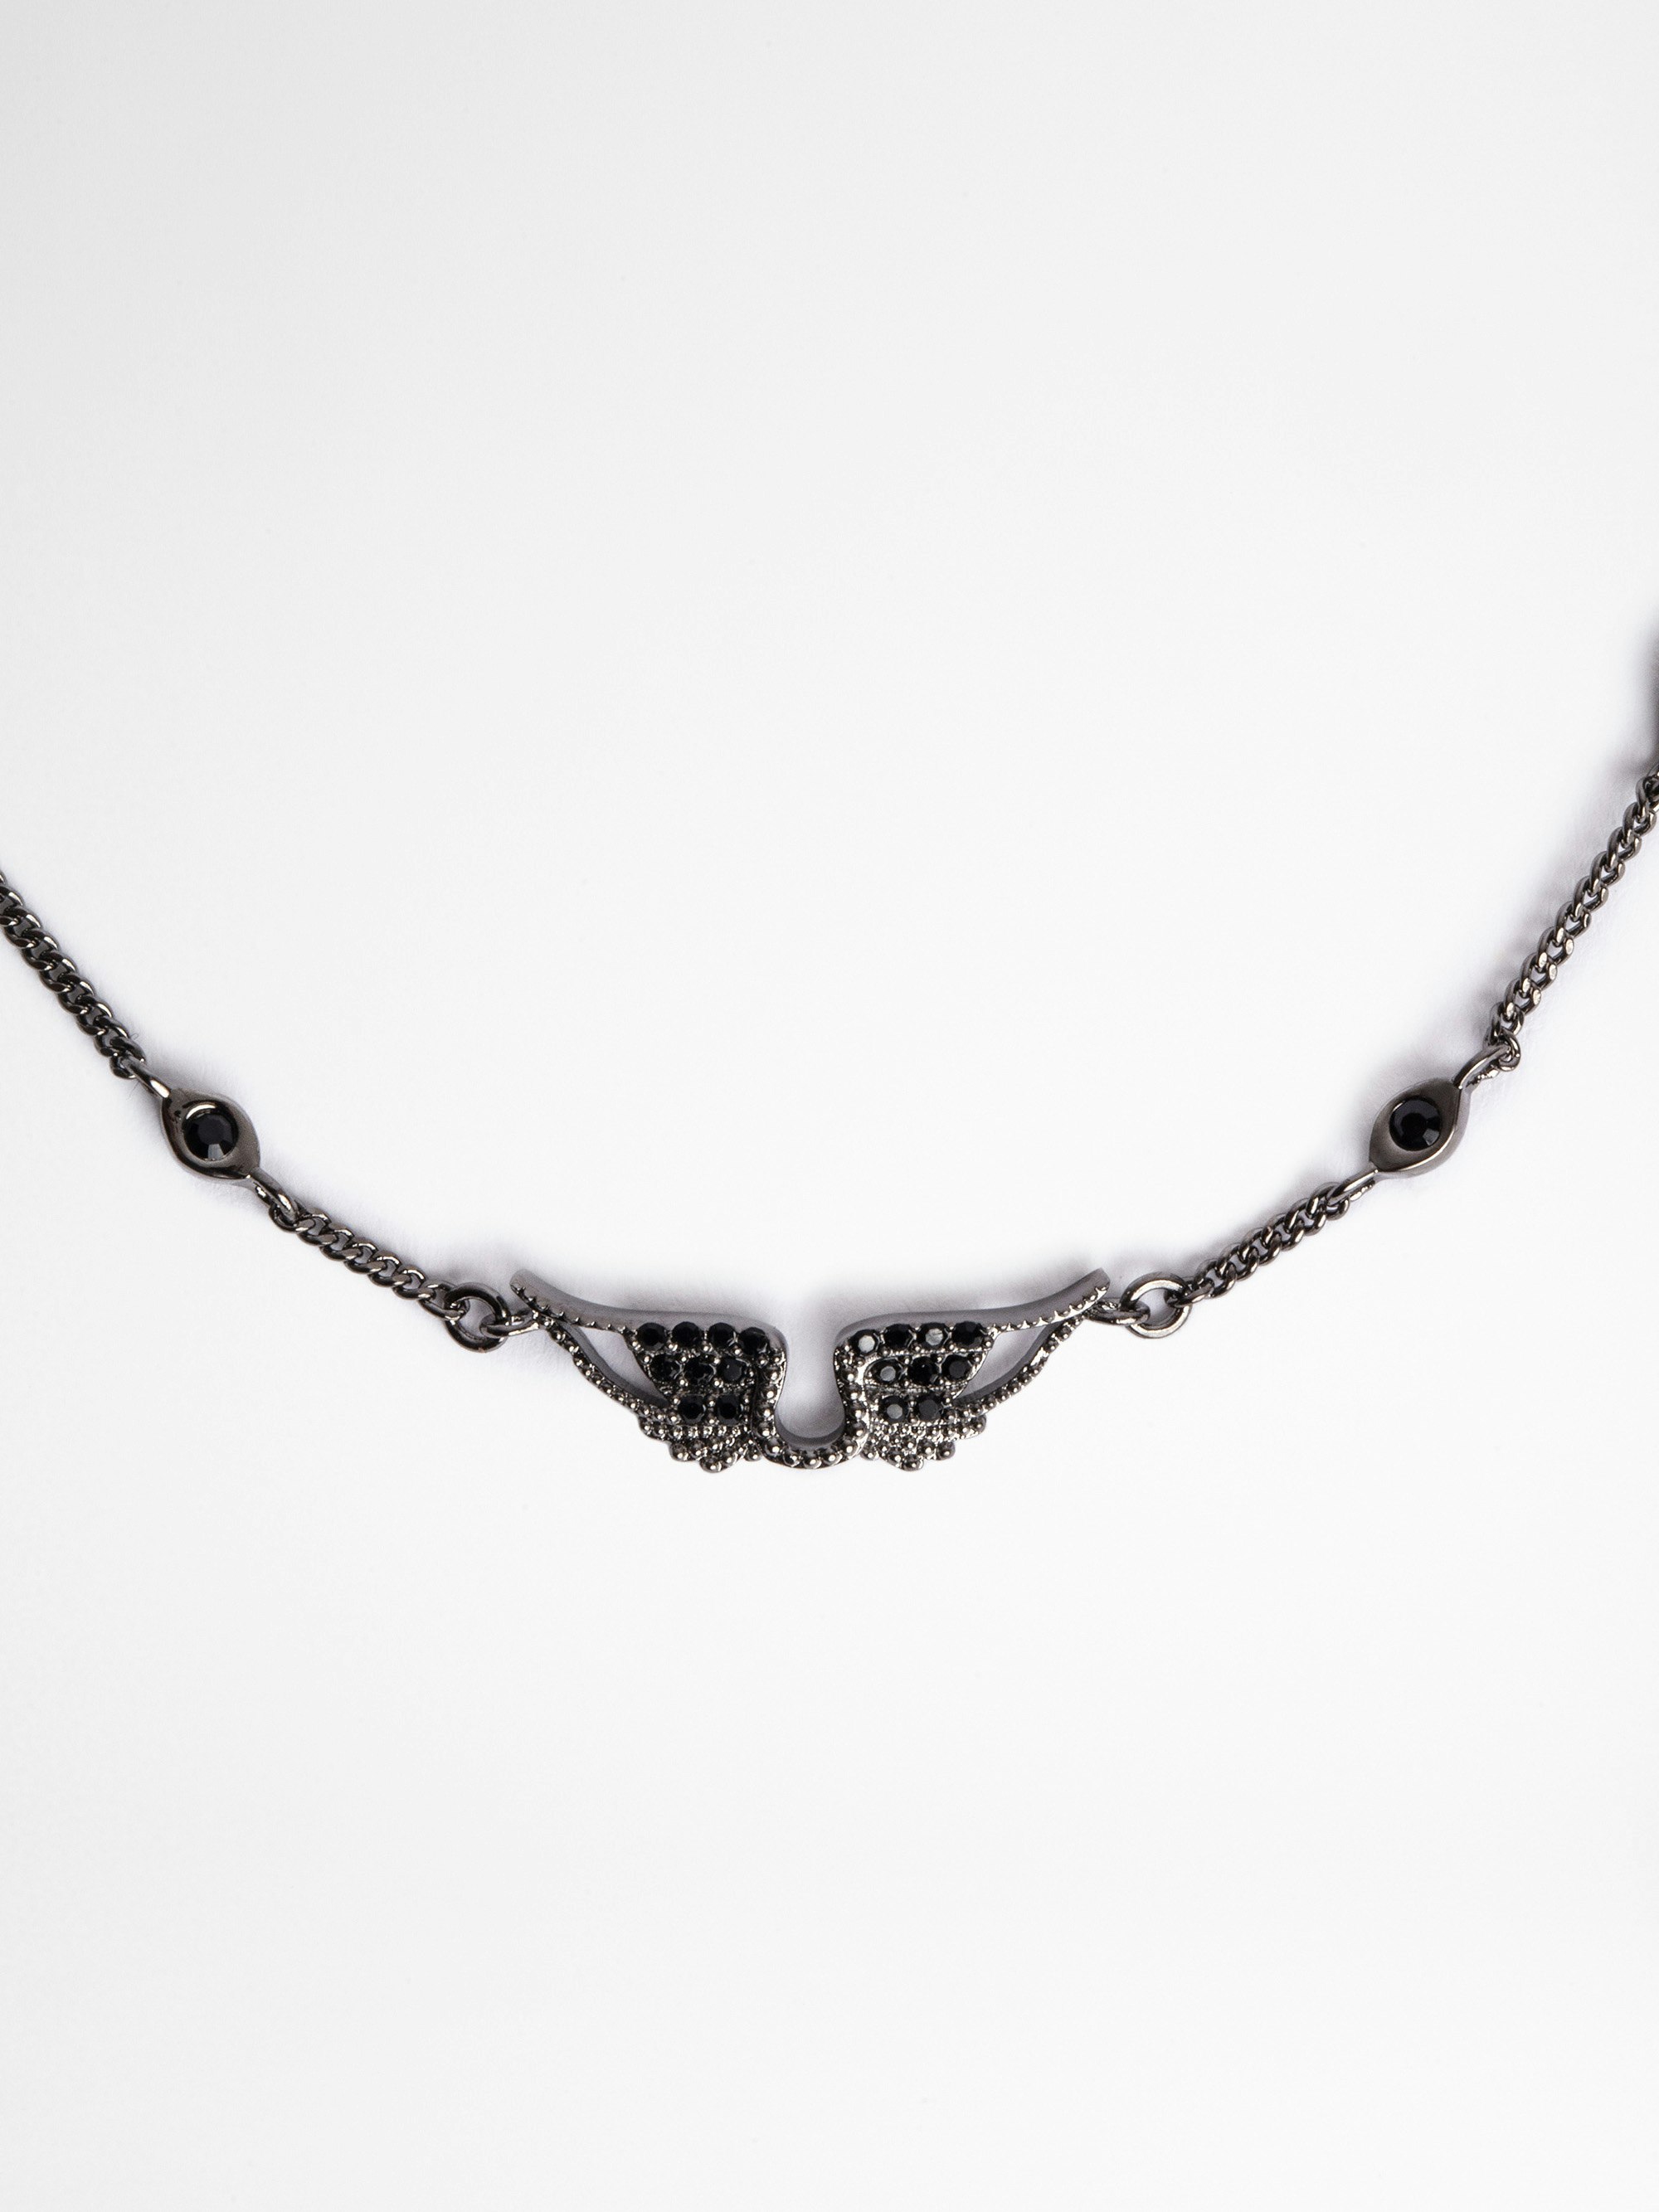 Rock Bracelet - Women's brass and rhinestone chain bracelet with wings